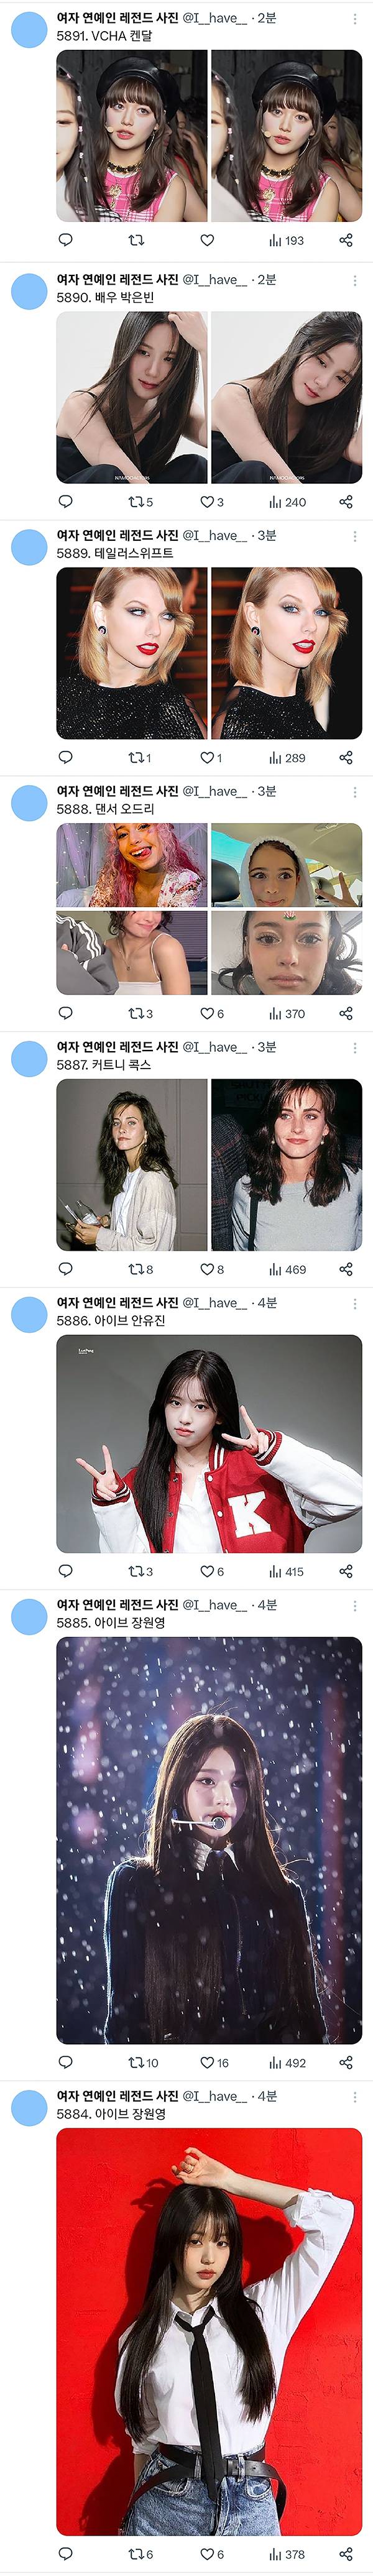 여자 연예인 레전드 사진 계정에 올라온 찐레전드 사진 | 인스티즈